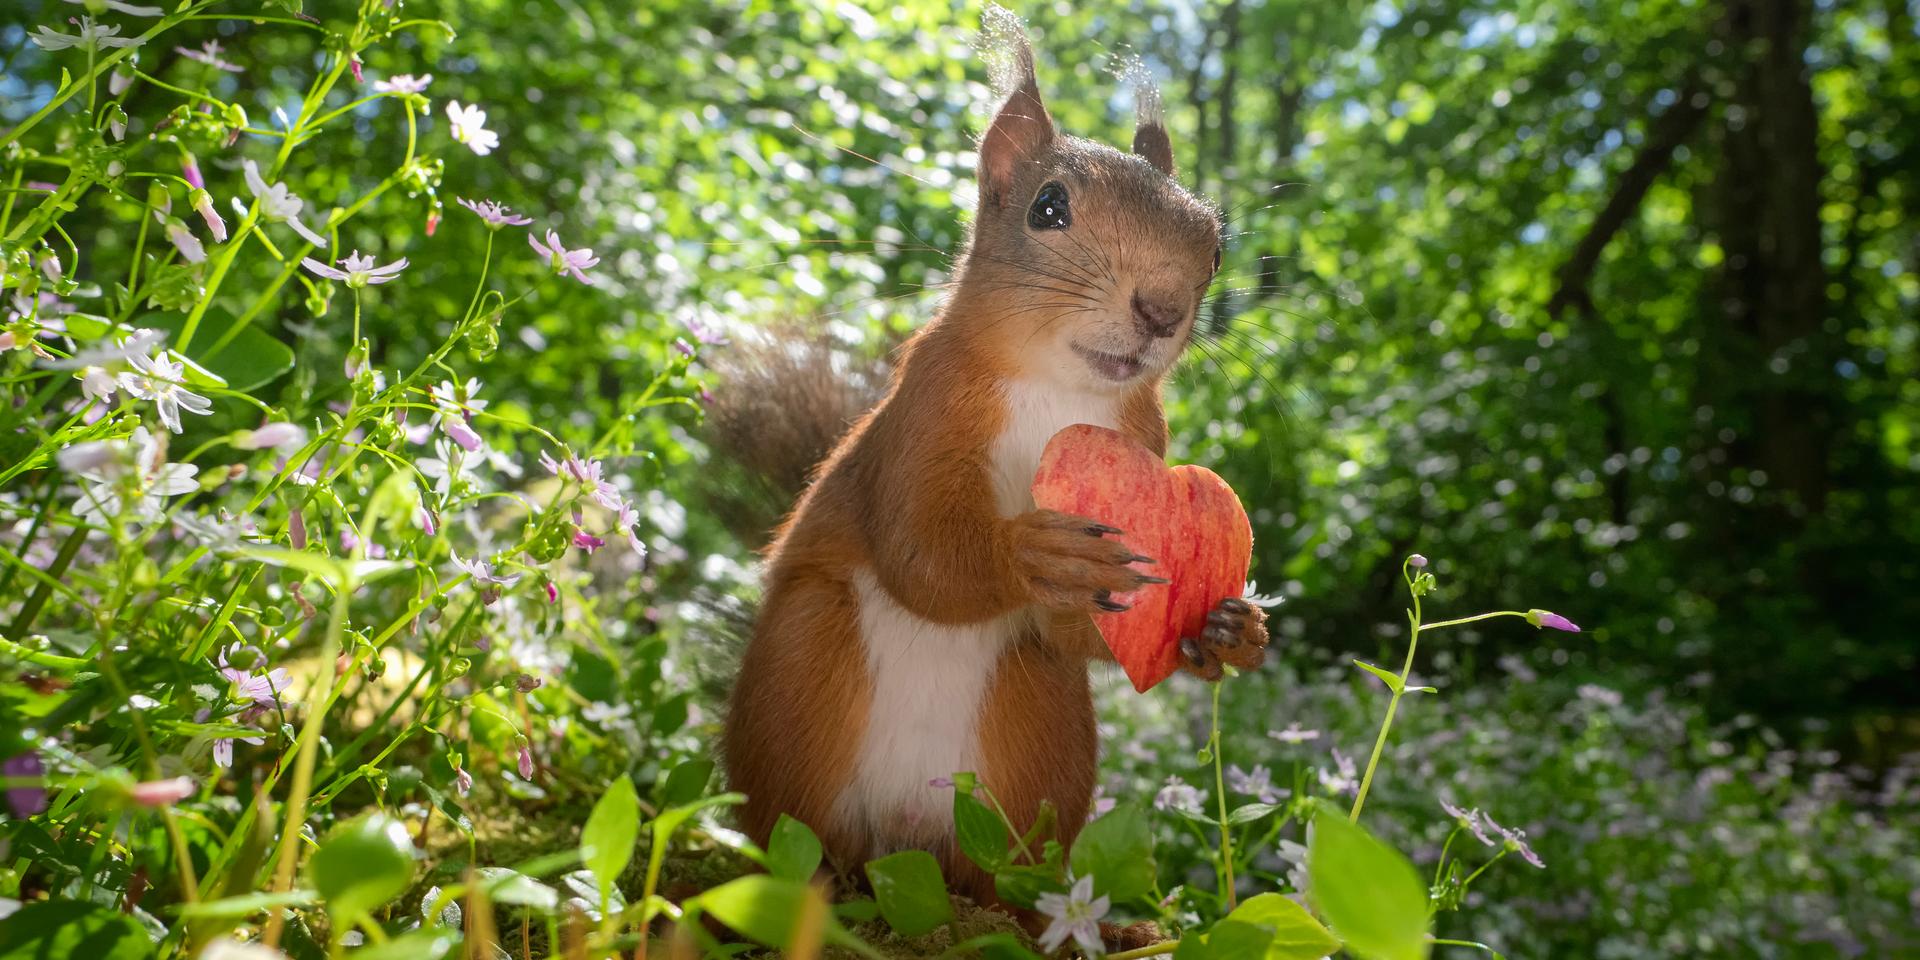 På Instagramkontot squirrels_by_fotoscenen lägger Johnny Kääpä ut foton på ekorrar. Hittills har han publicerat 1 361 inlägg.